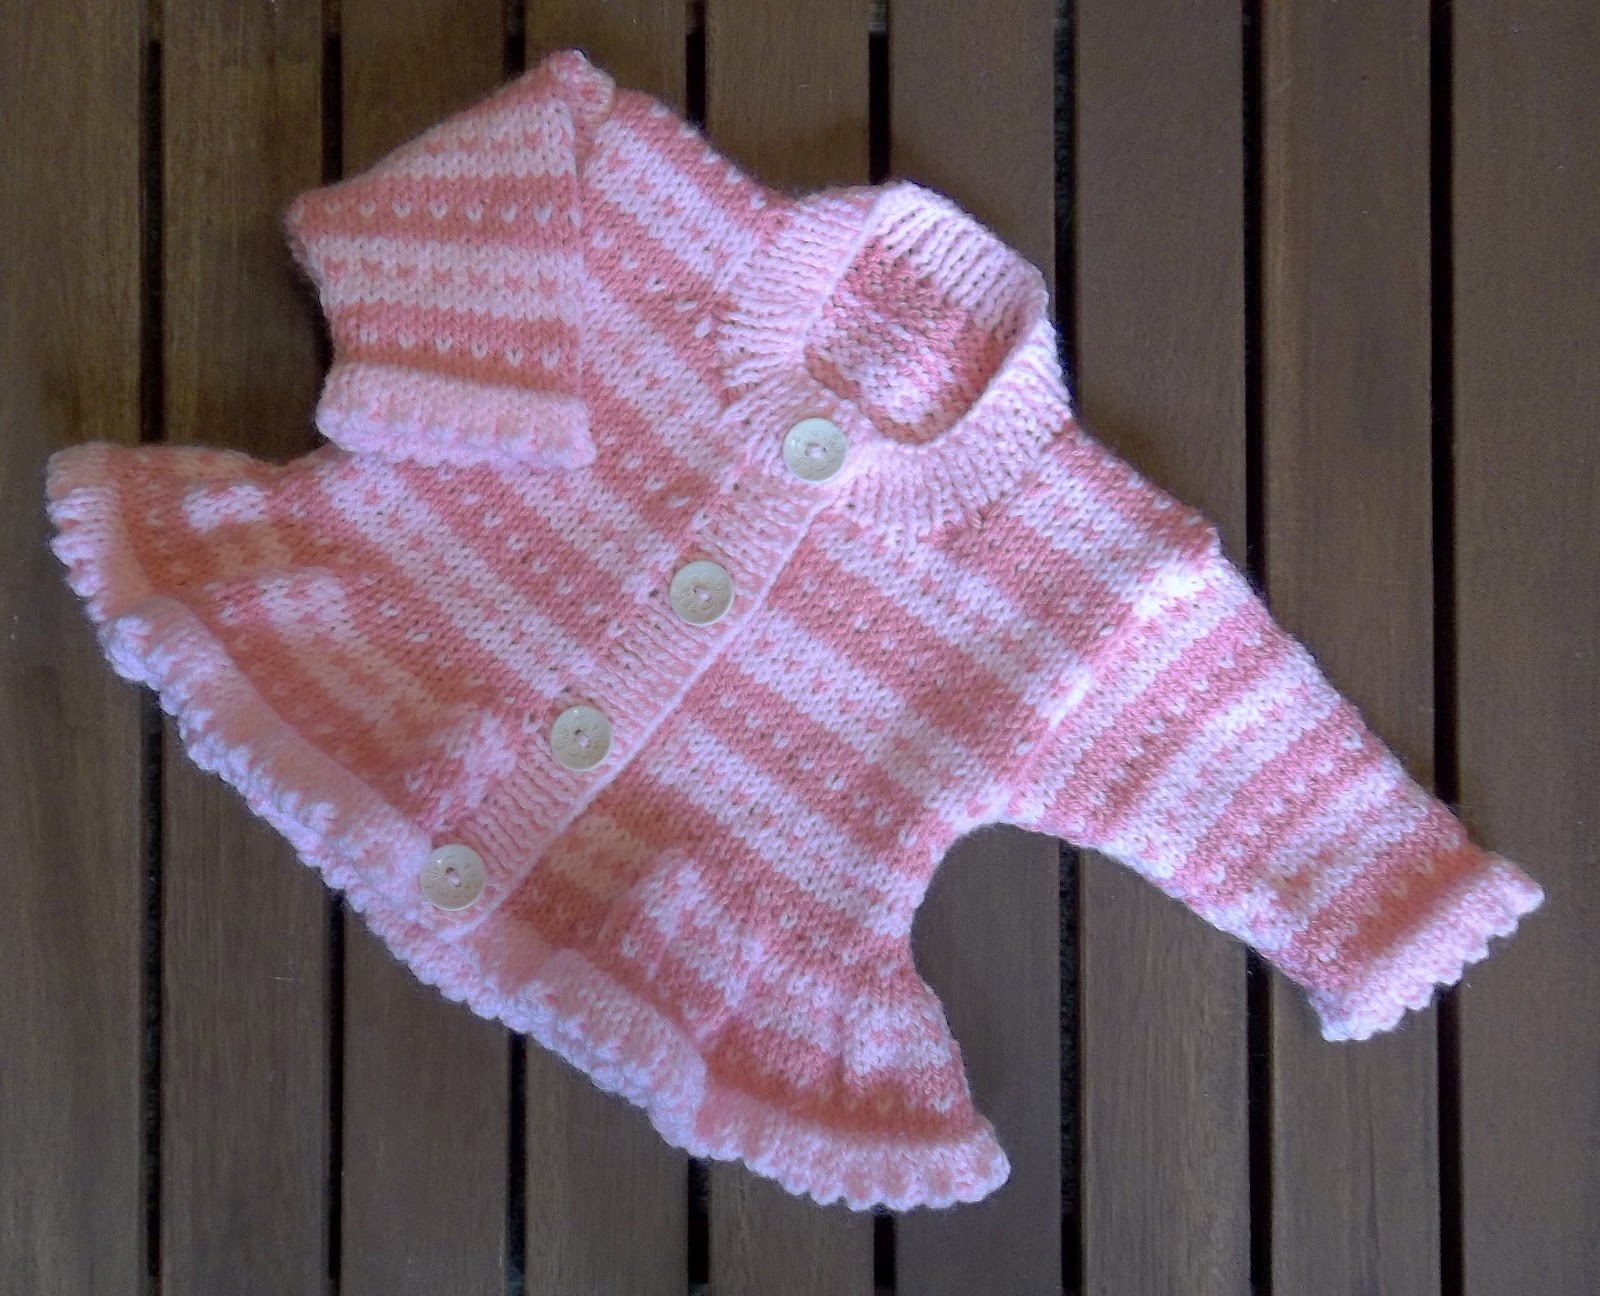 prem baby knitting patterns free | eBay